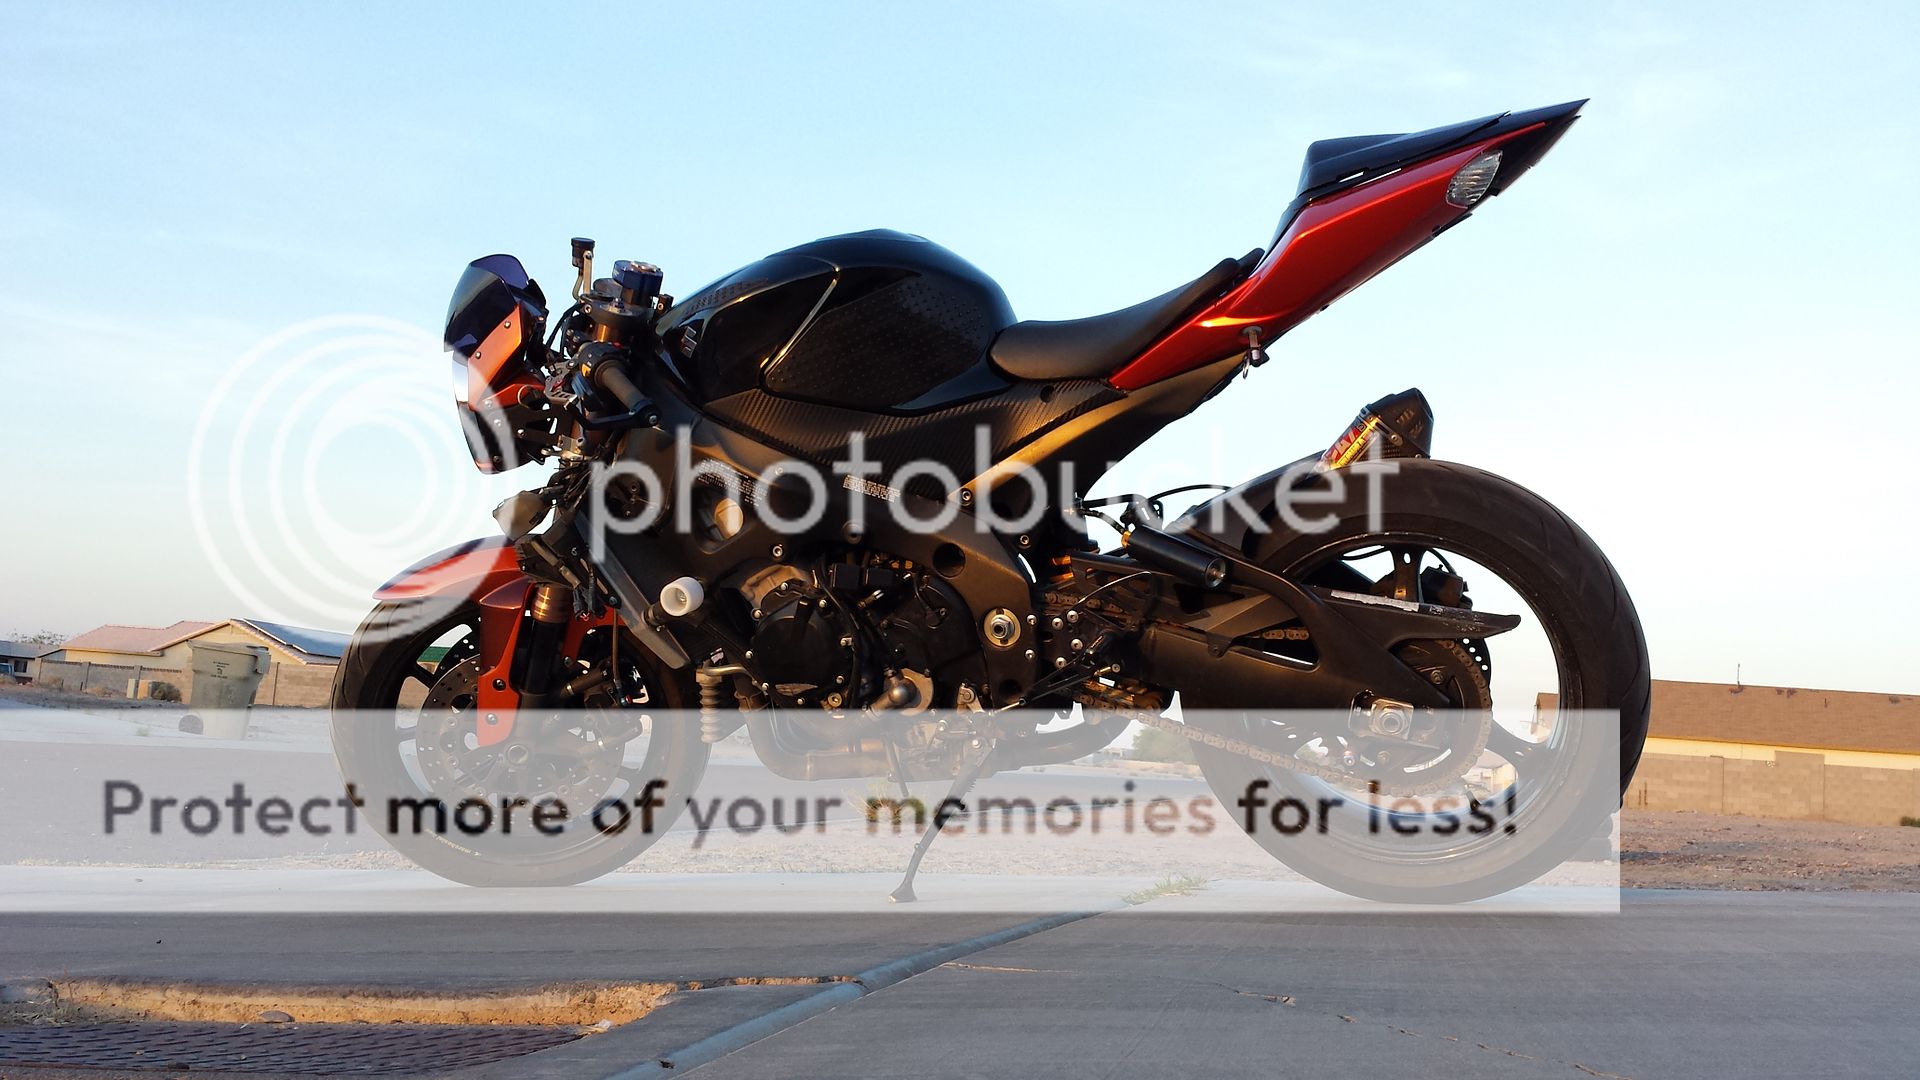 07 GSXR 1000 Naked! Suzuki GSXR Motorcycle Forums